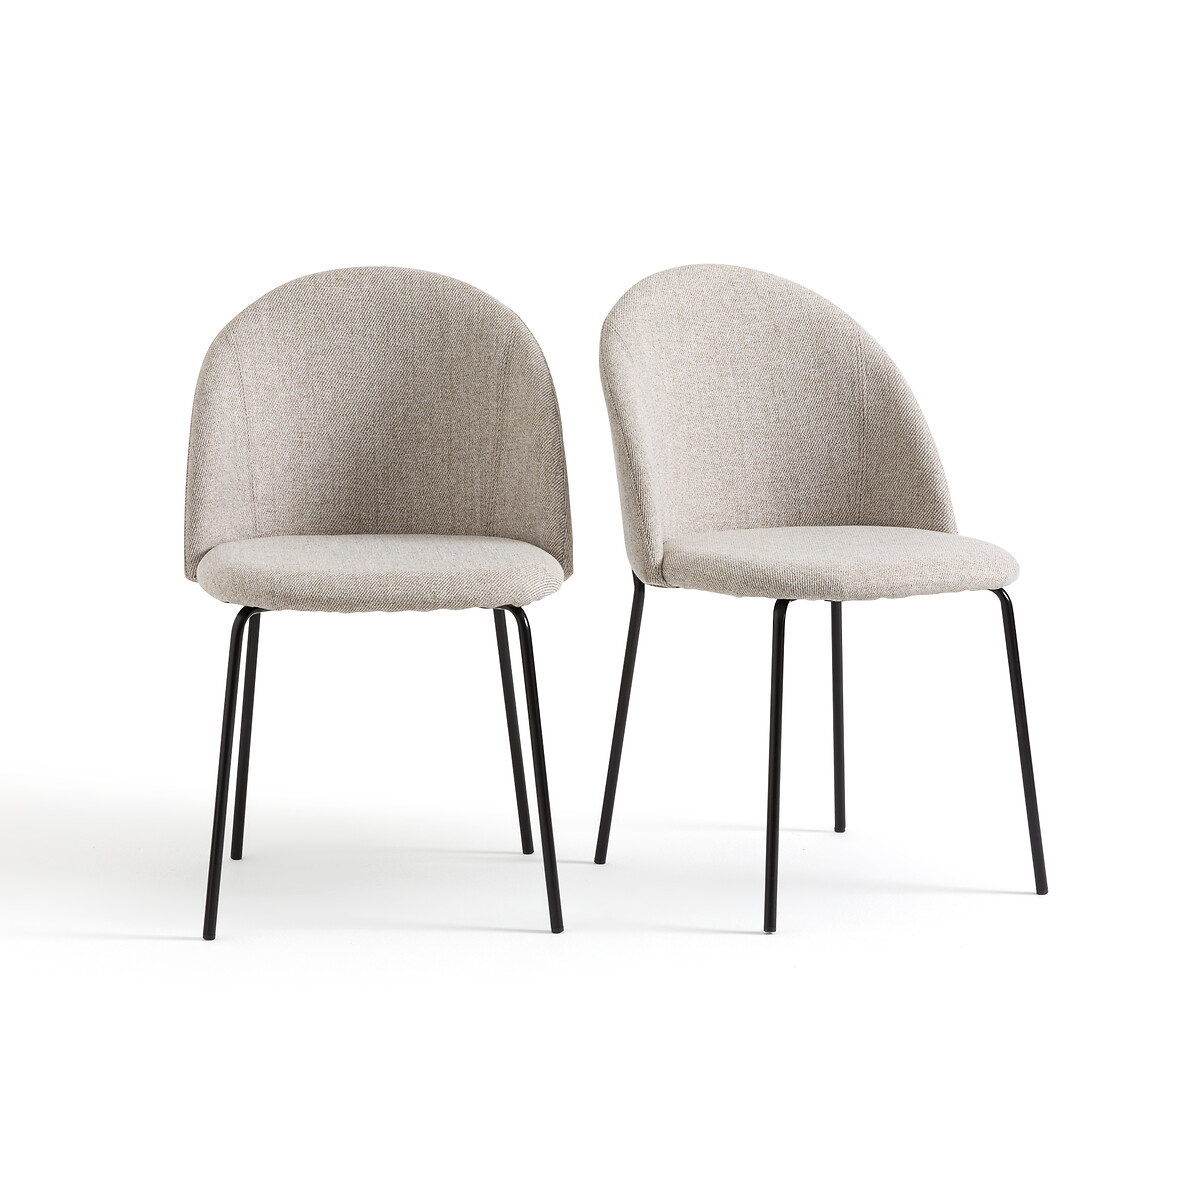 Комплект из двух стульев из ткани меланж Nordie единый размер бежевый